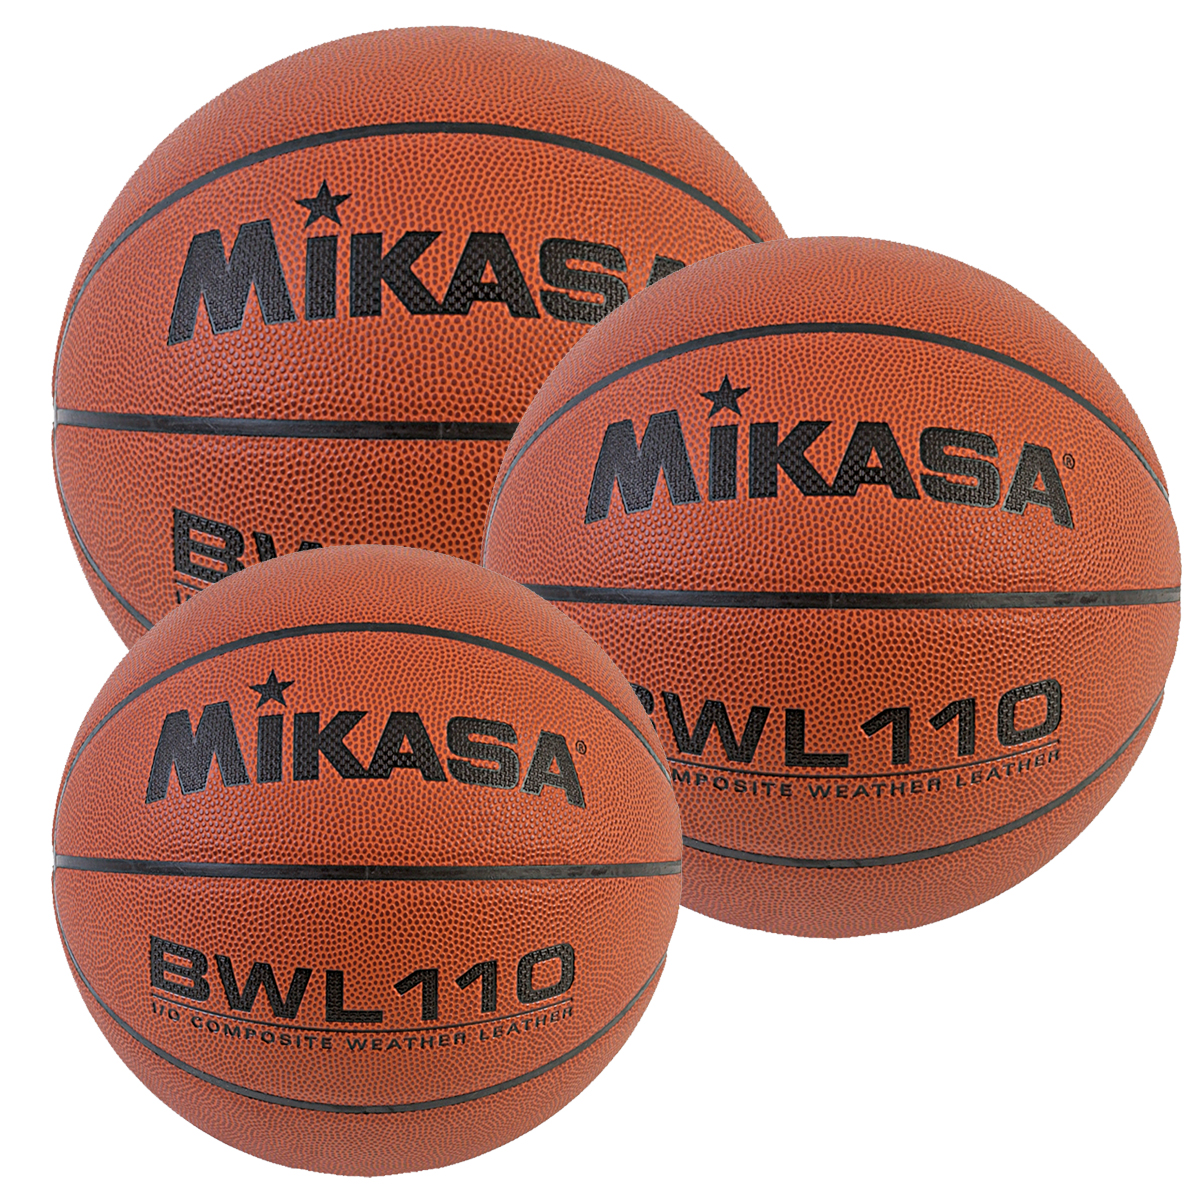 Mikasa BWL110 Basketballs